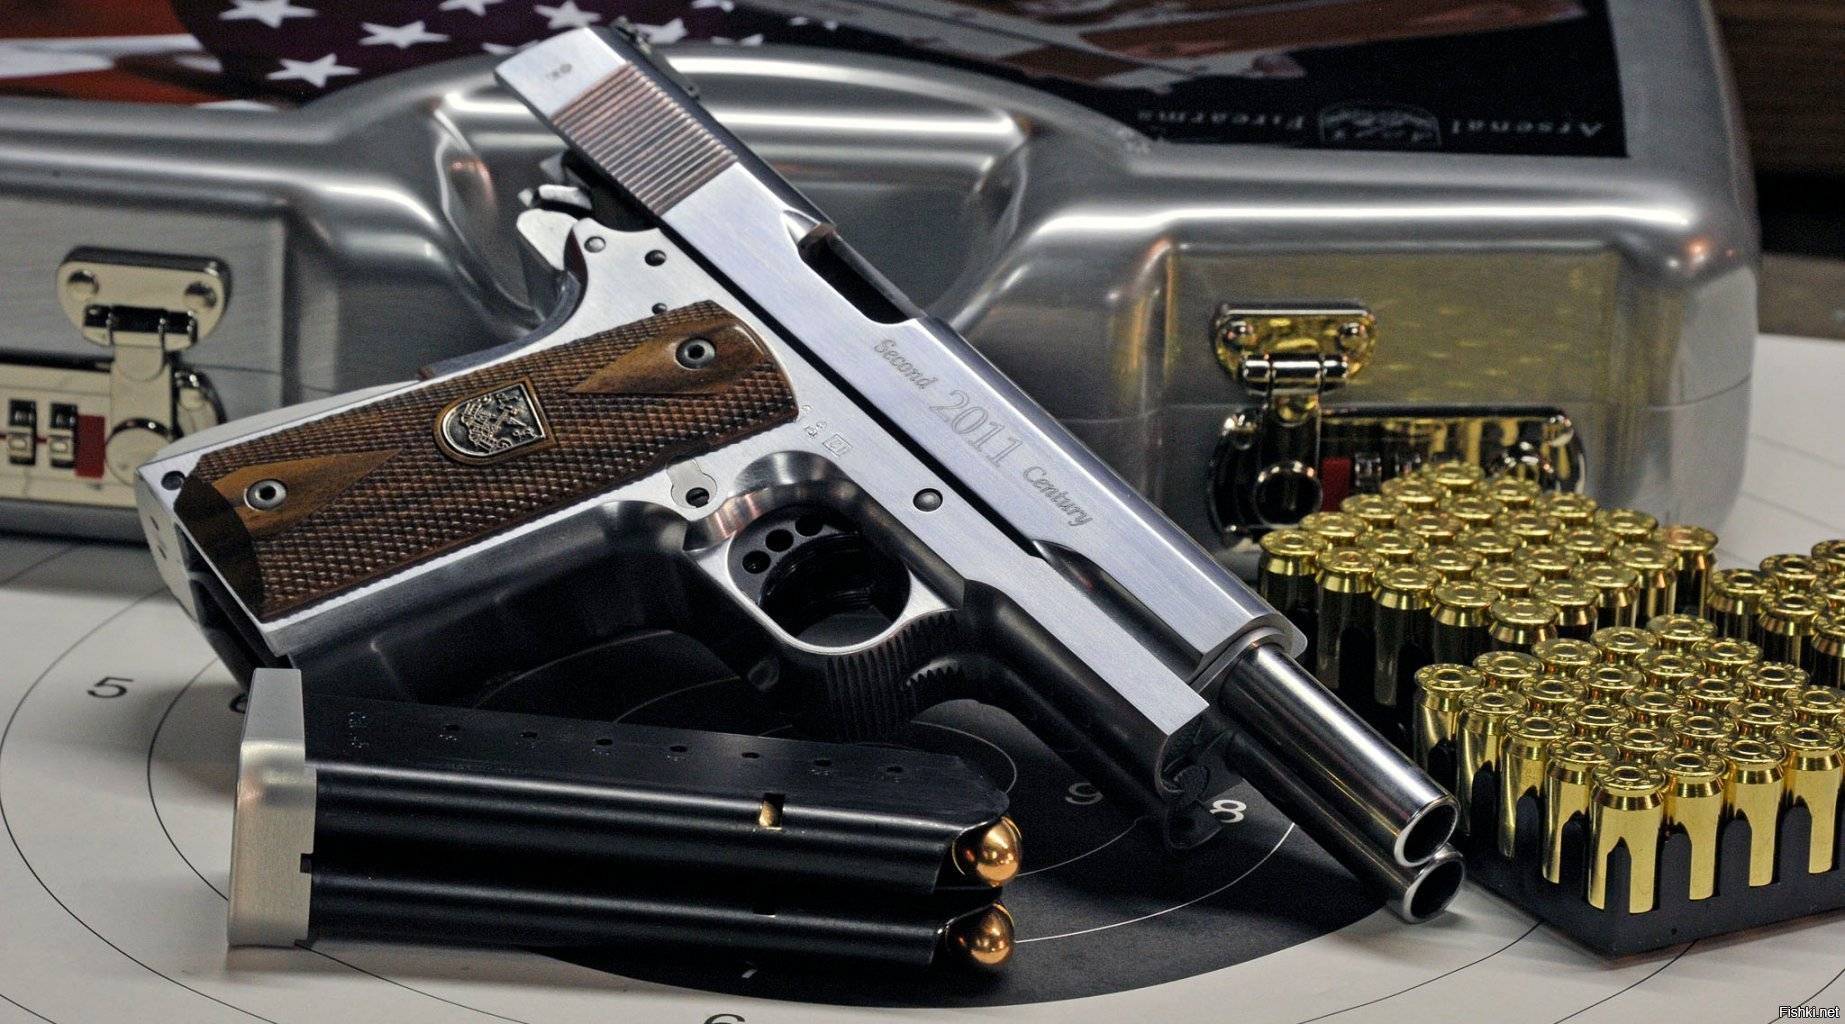 Пистолет af2001-a1 second century arsenal firearms — характеристики, ттх, фото